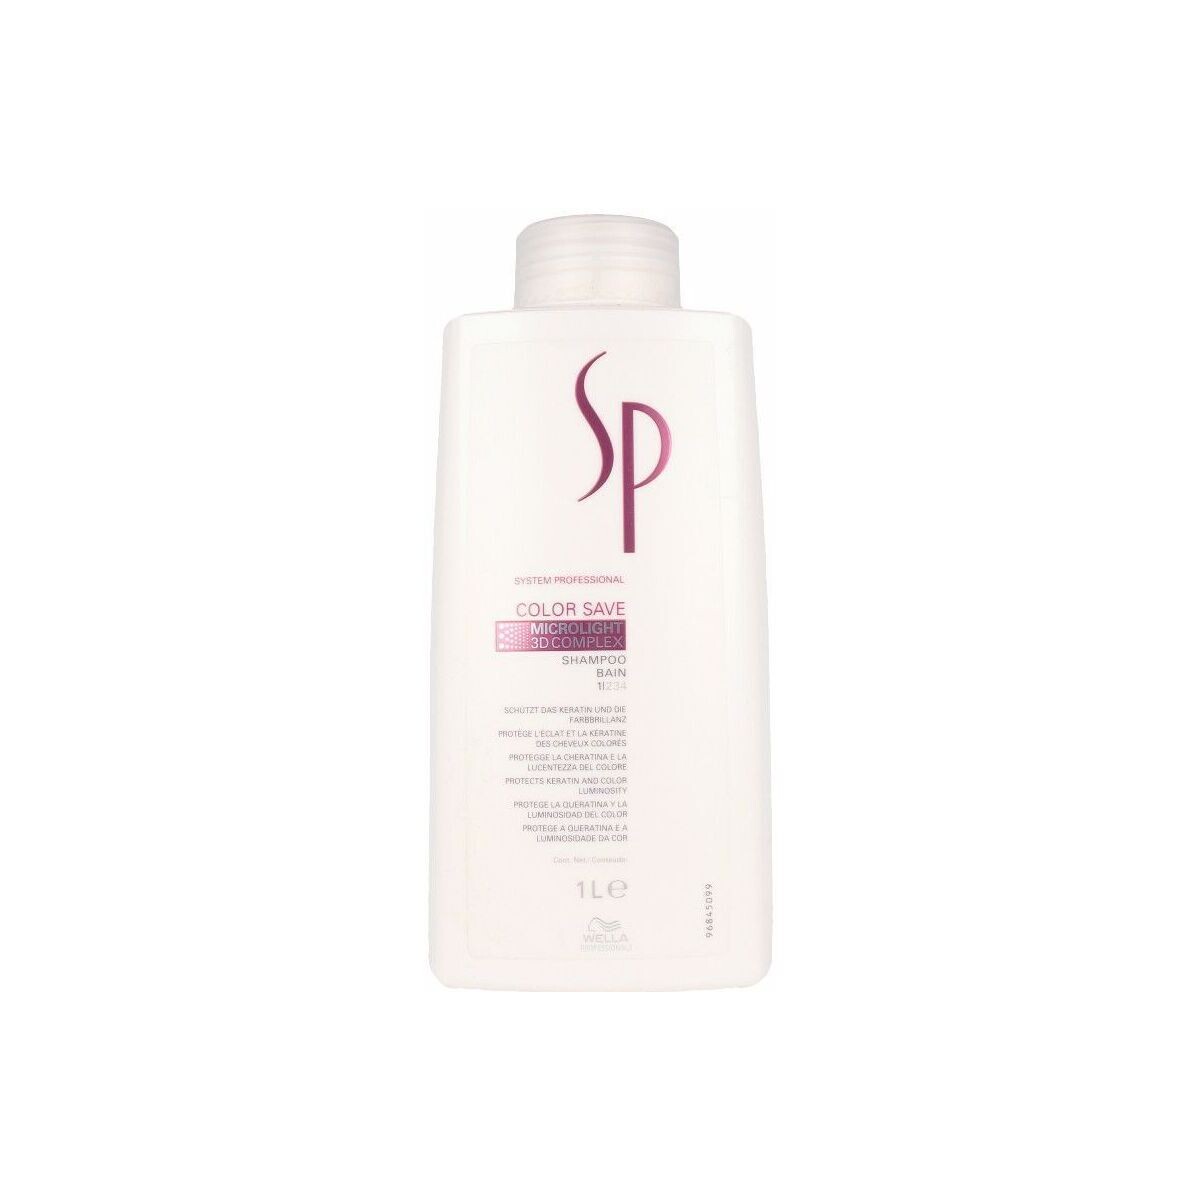 Beauty Shampoo System Professional Sp Color Save Shampoo 